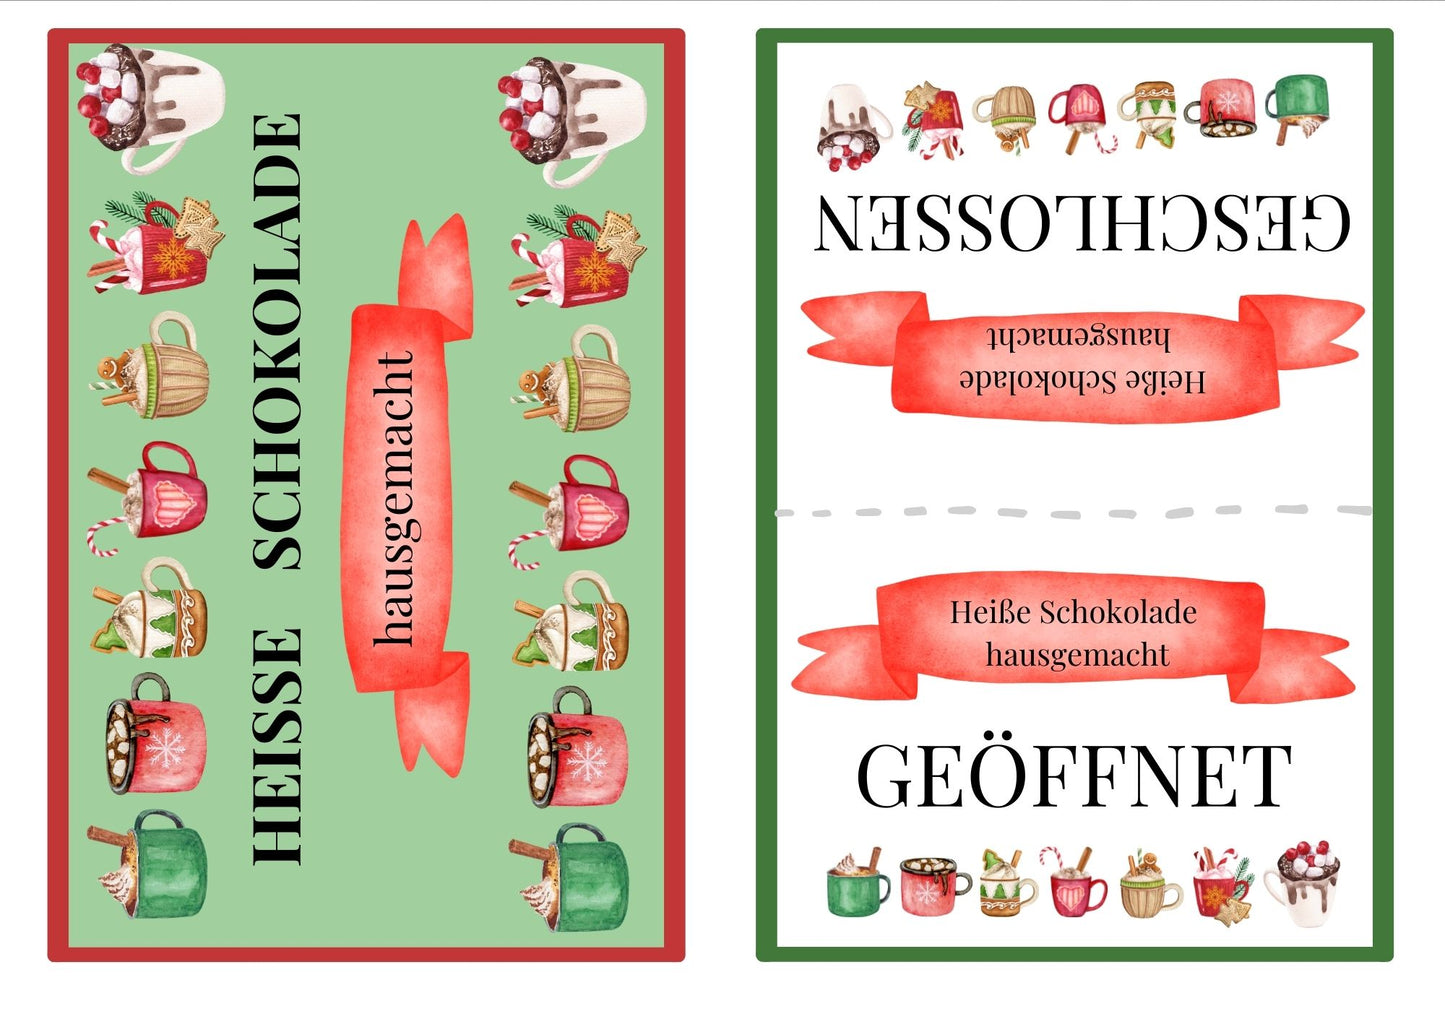 Weihnachten: 70 Seiten Traditionen und Feiertage Guide für Familien mit Kindern